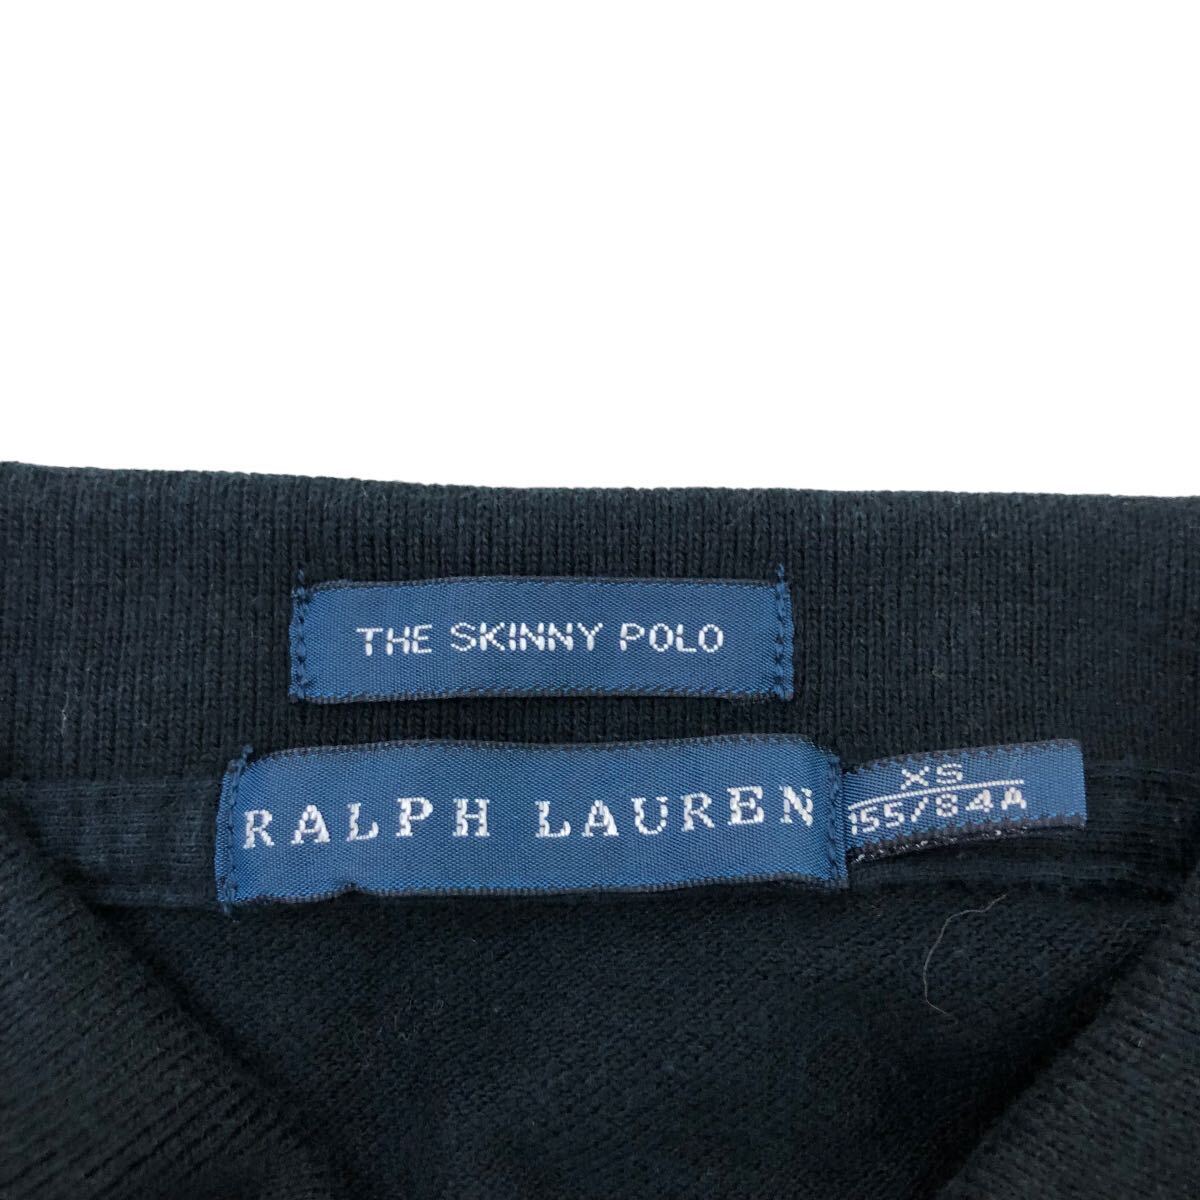 B383-14 RALPH LAUREN ラルフローレン THE SKINNY POLO 半袖 ポロシャツ シャツ トップス カットソー ビッグポニー ブラック レディース XS_画像8